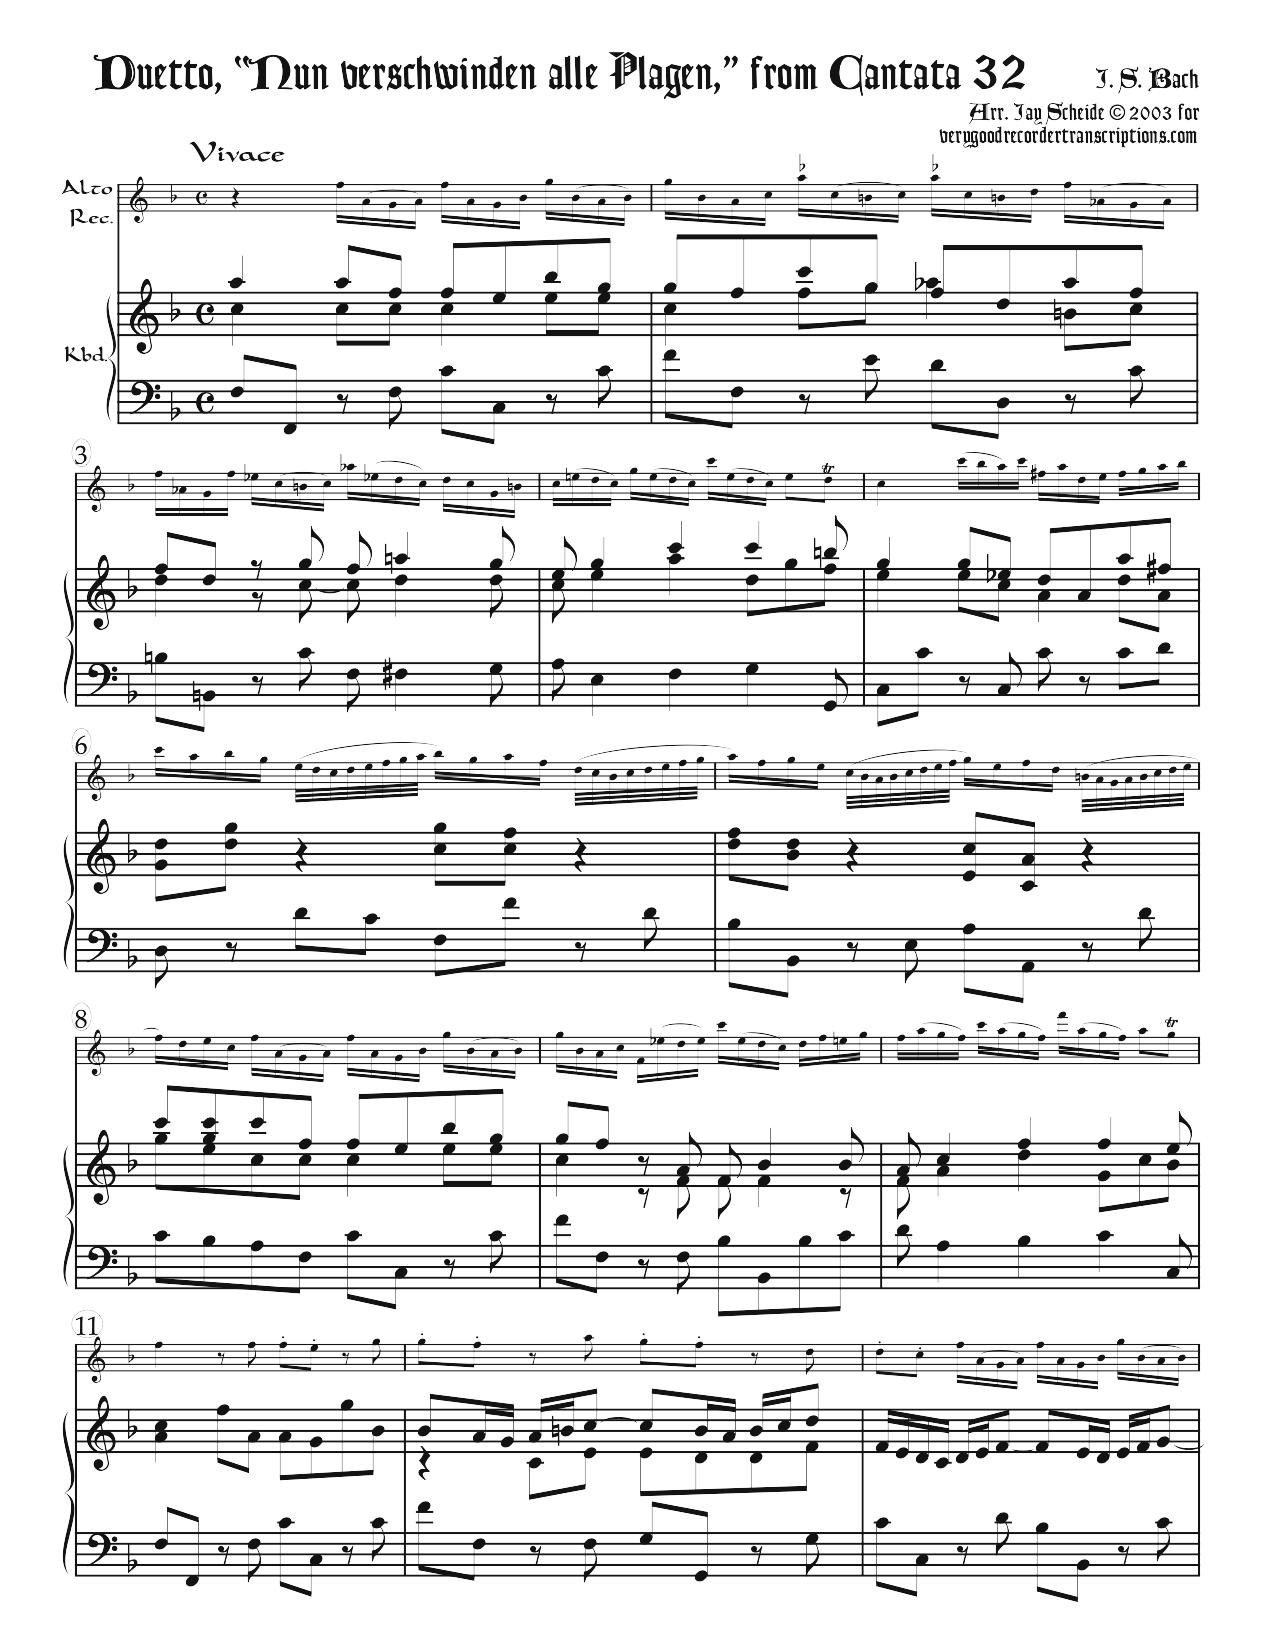 Duetto, “Nun verschwinden alle Plagen,” from Cantata 32